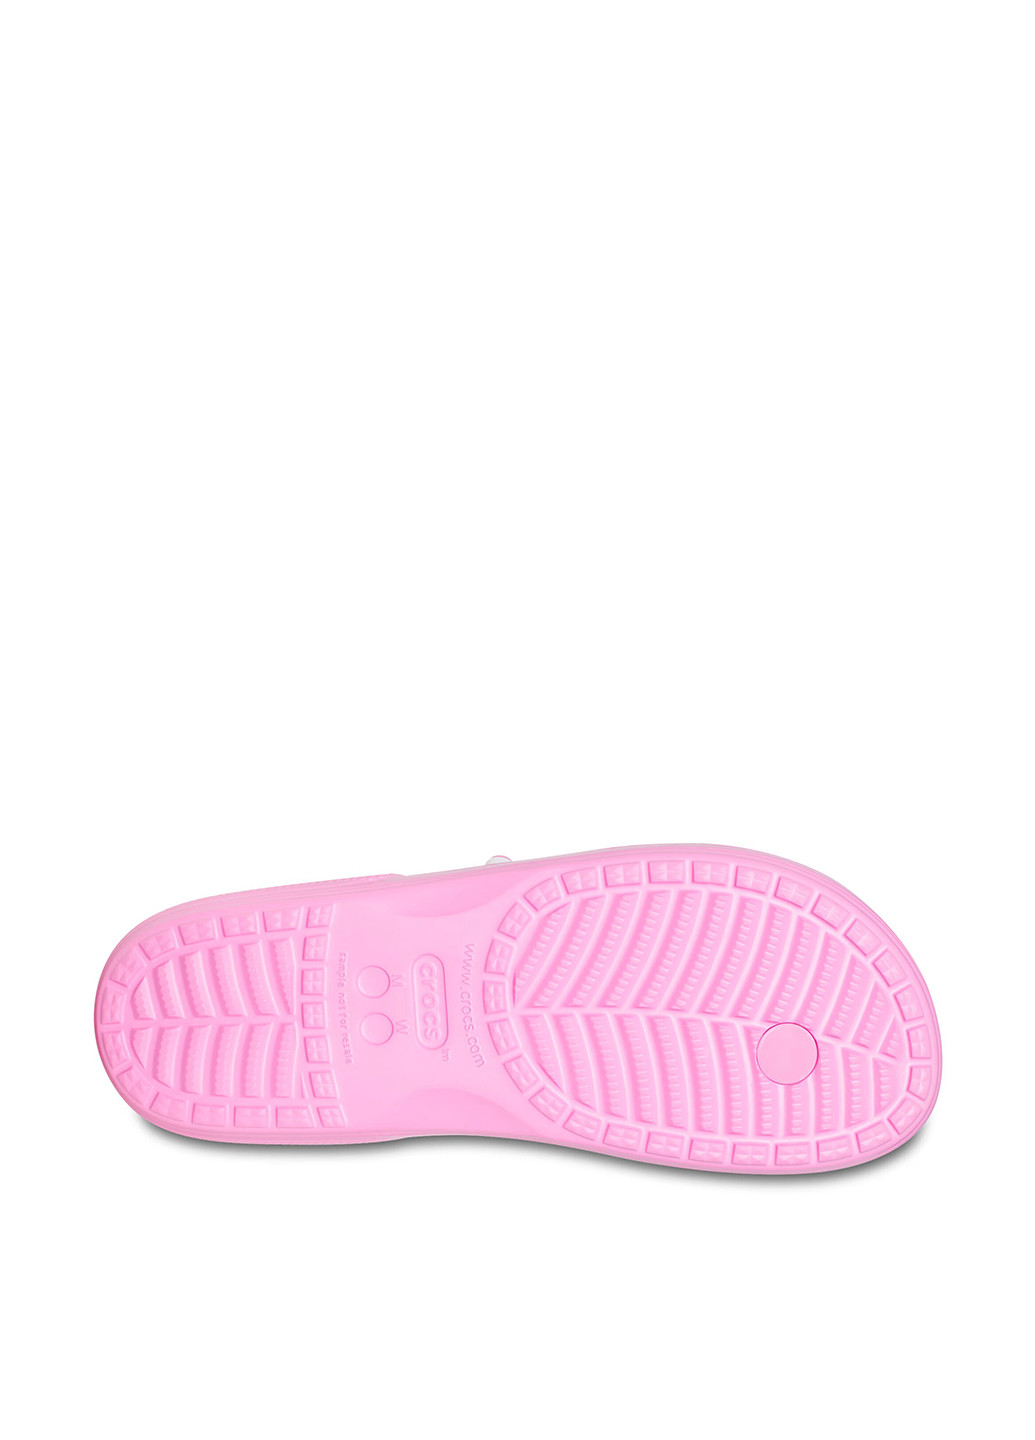 Розовые пляжные вьетнамки Crocs с тиснением